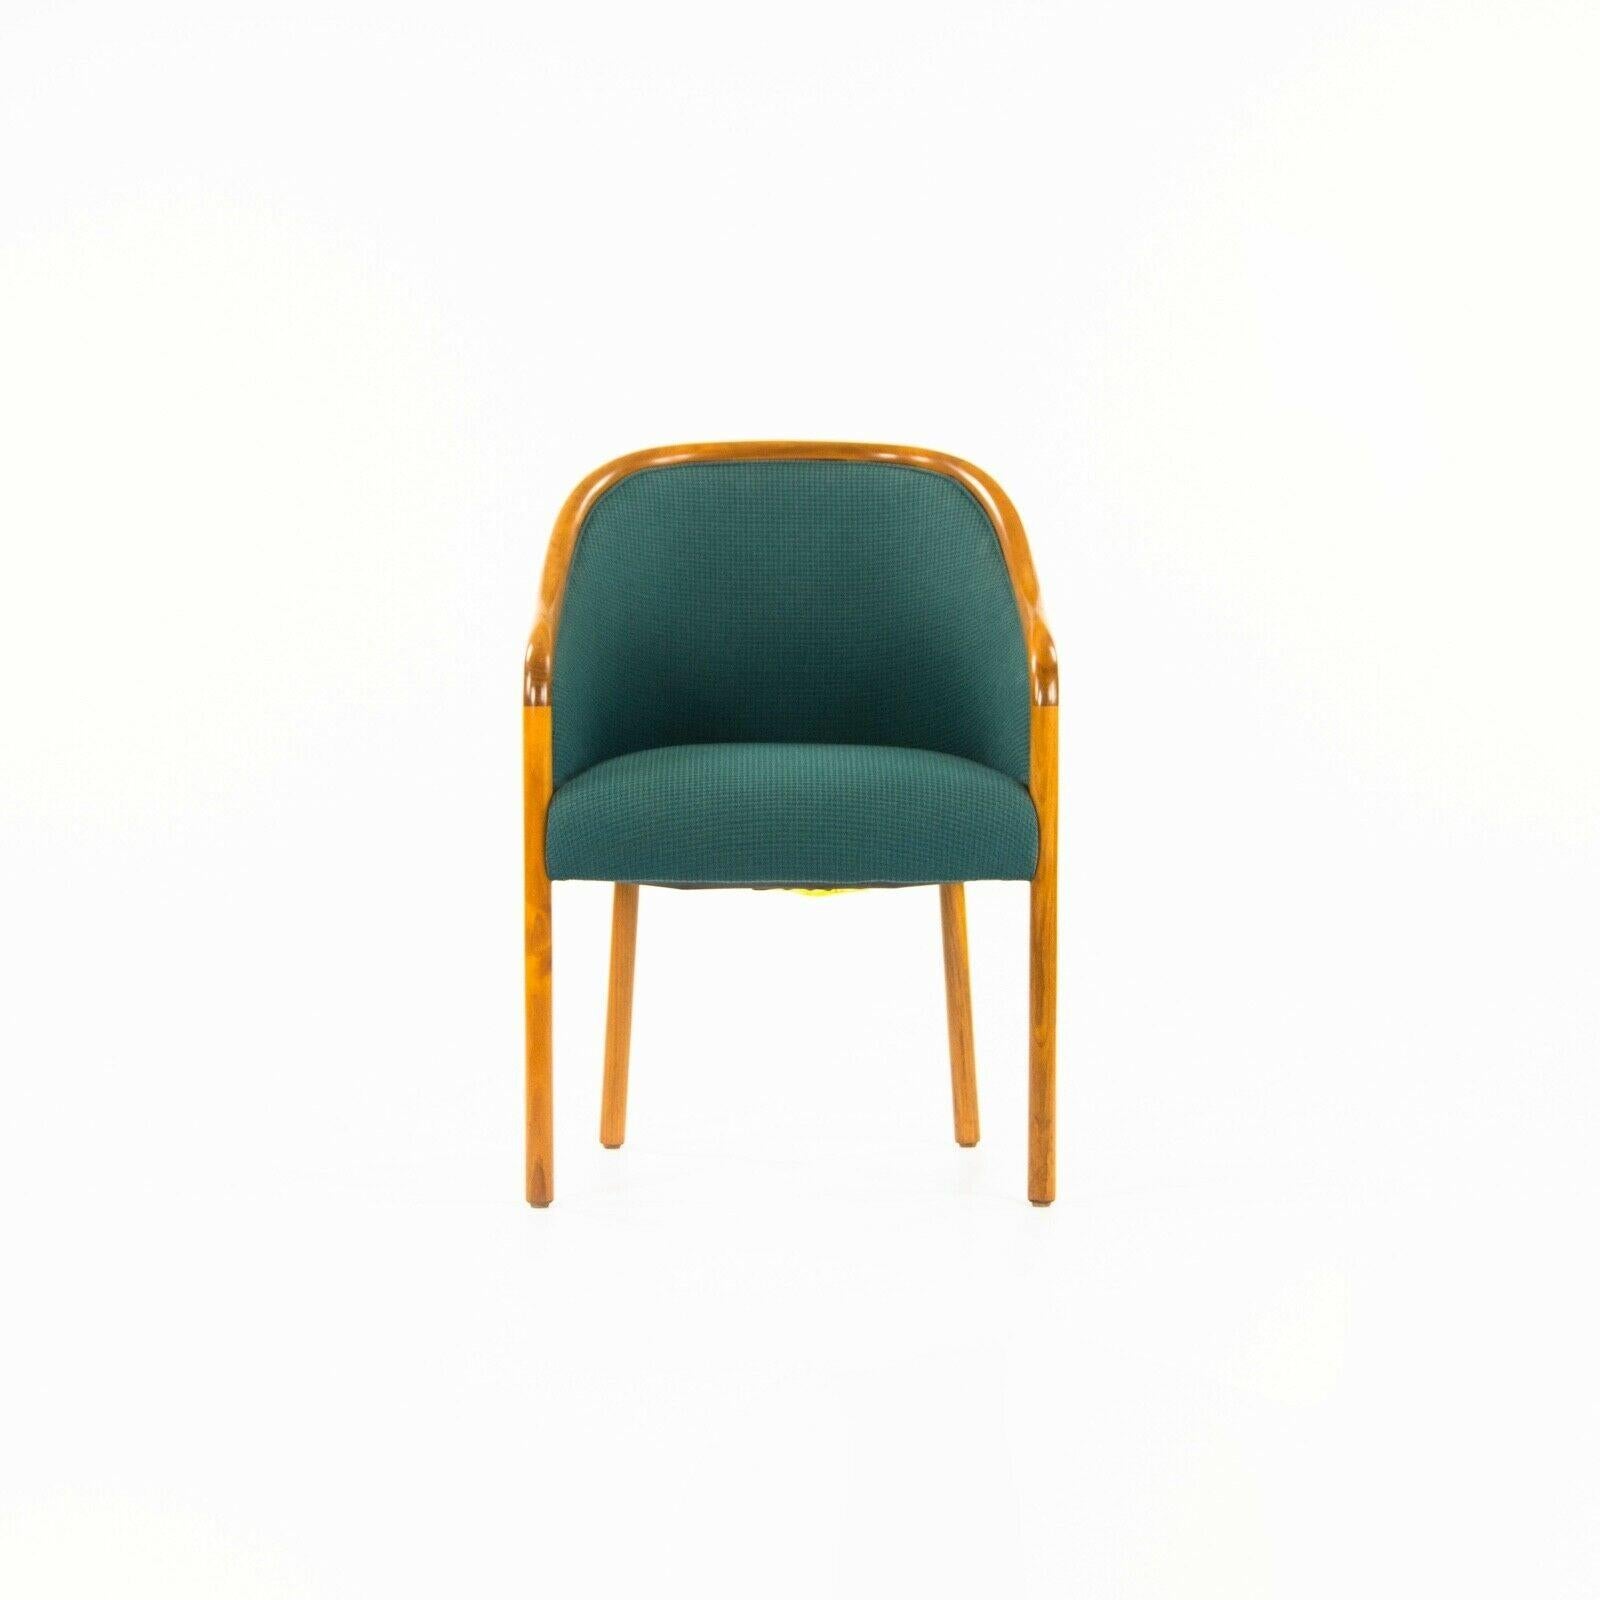 La vente porte sur une paire de chaises de salle à manger / chaises d'appoint originales conçues par Ward Bennett et produites par Brickel Associates. Cette paire provient d'un bureau de Manhattan, qui avait été conçu dans les années 1970 par un